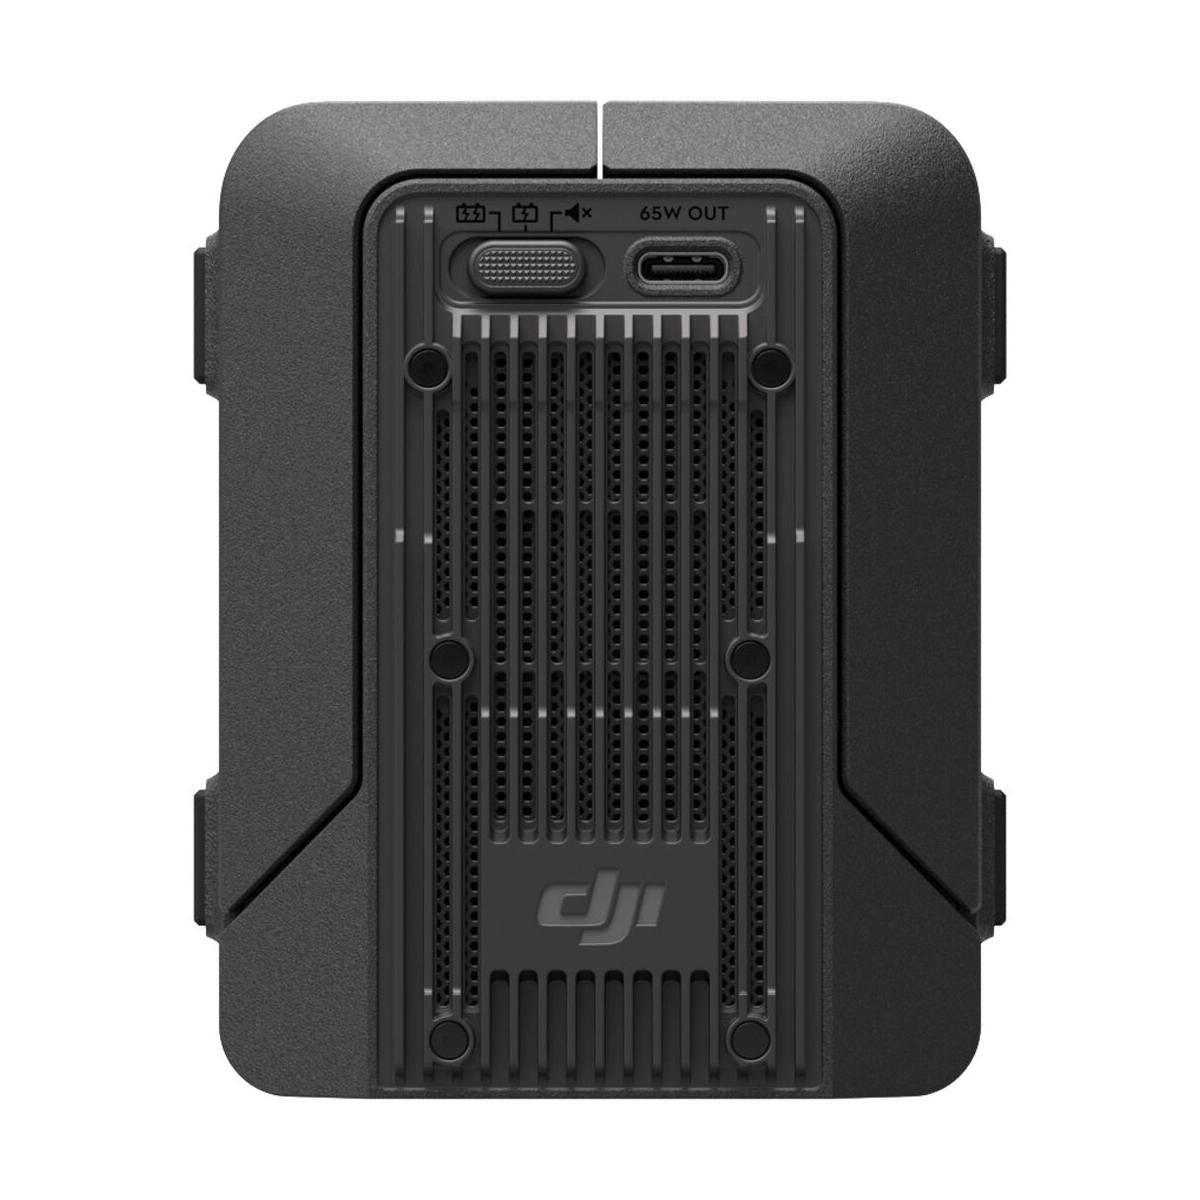 DJI TB51 Intelligent Flight Battery Charging Hub